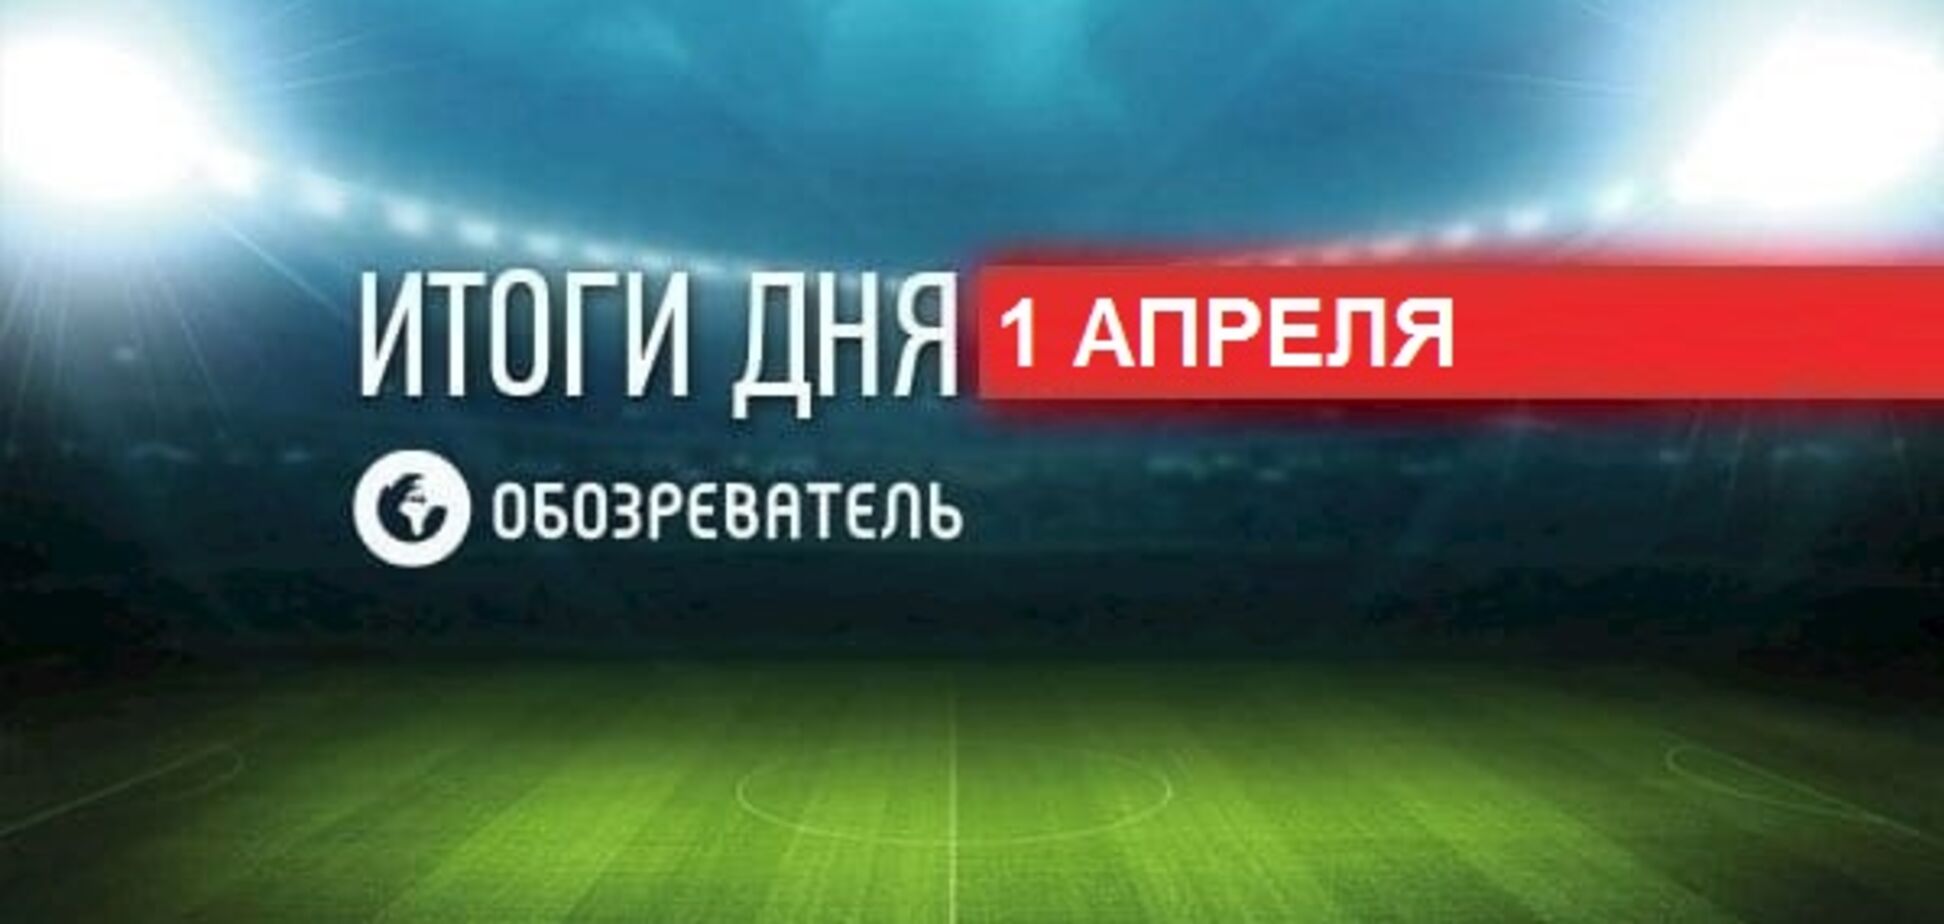 Драка на матче 'Мариуполь' - 'Динамо': спортивные итоги 1 апреля